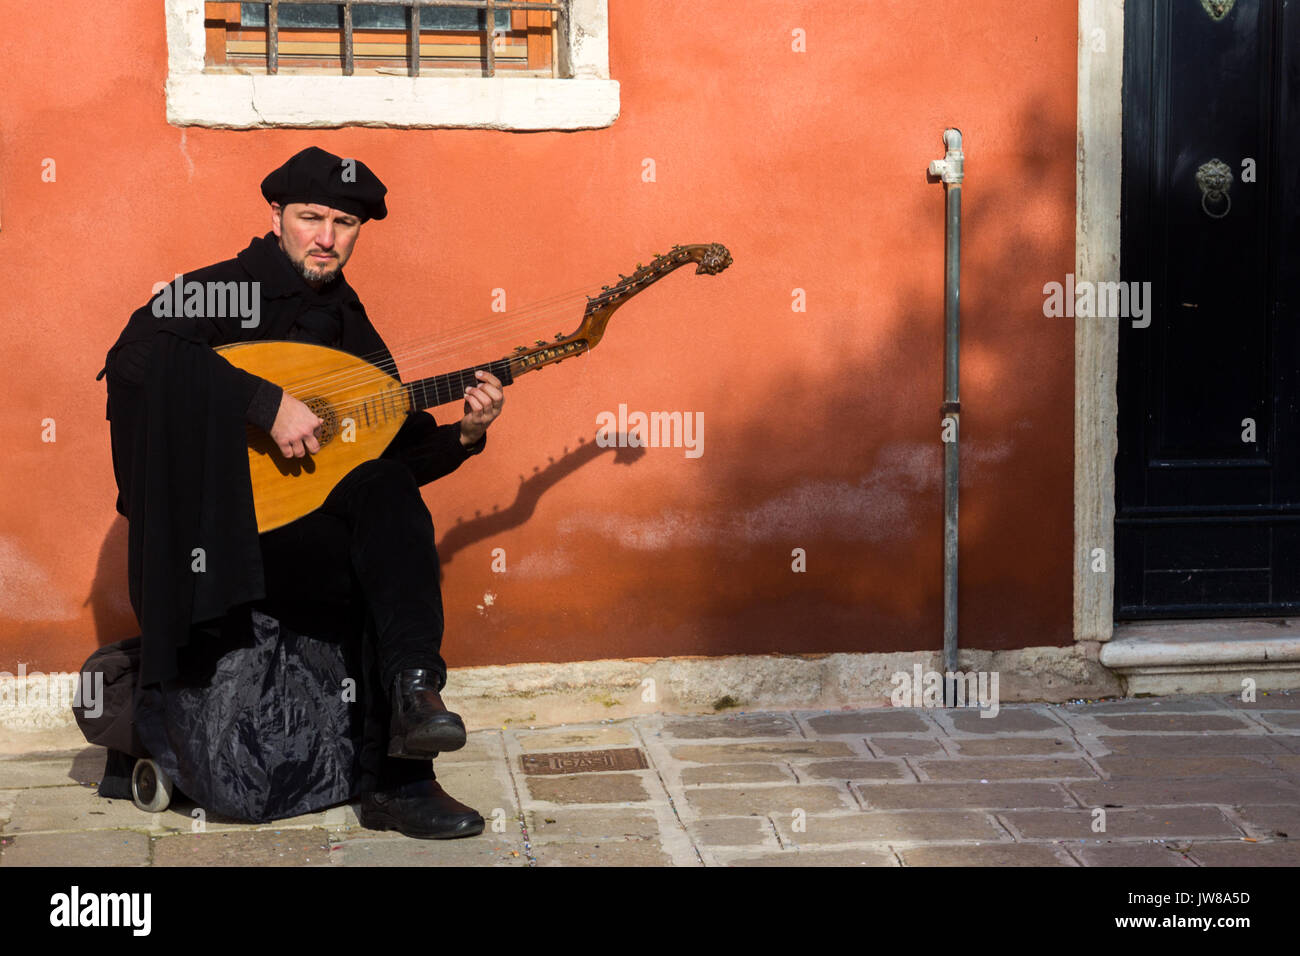 Venedig, Italien - Feb 7, 2013: Straßenmusiker spielen eine Harfe Gitarre  auf einer Straße in Venedig Stockfotografie - Alamy